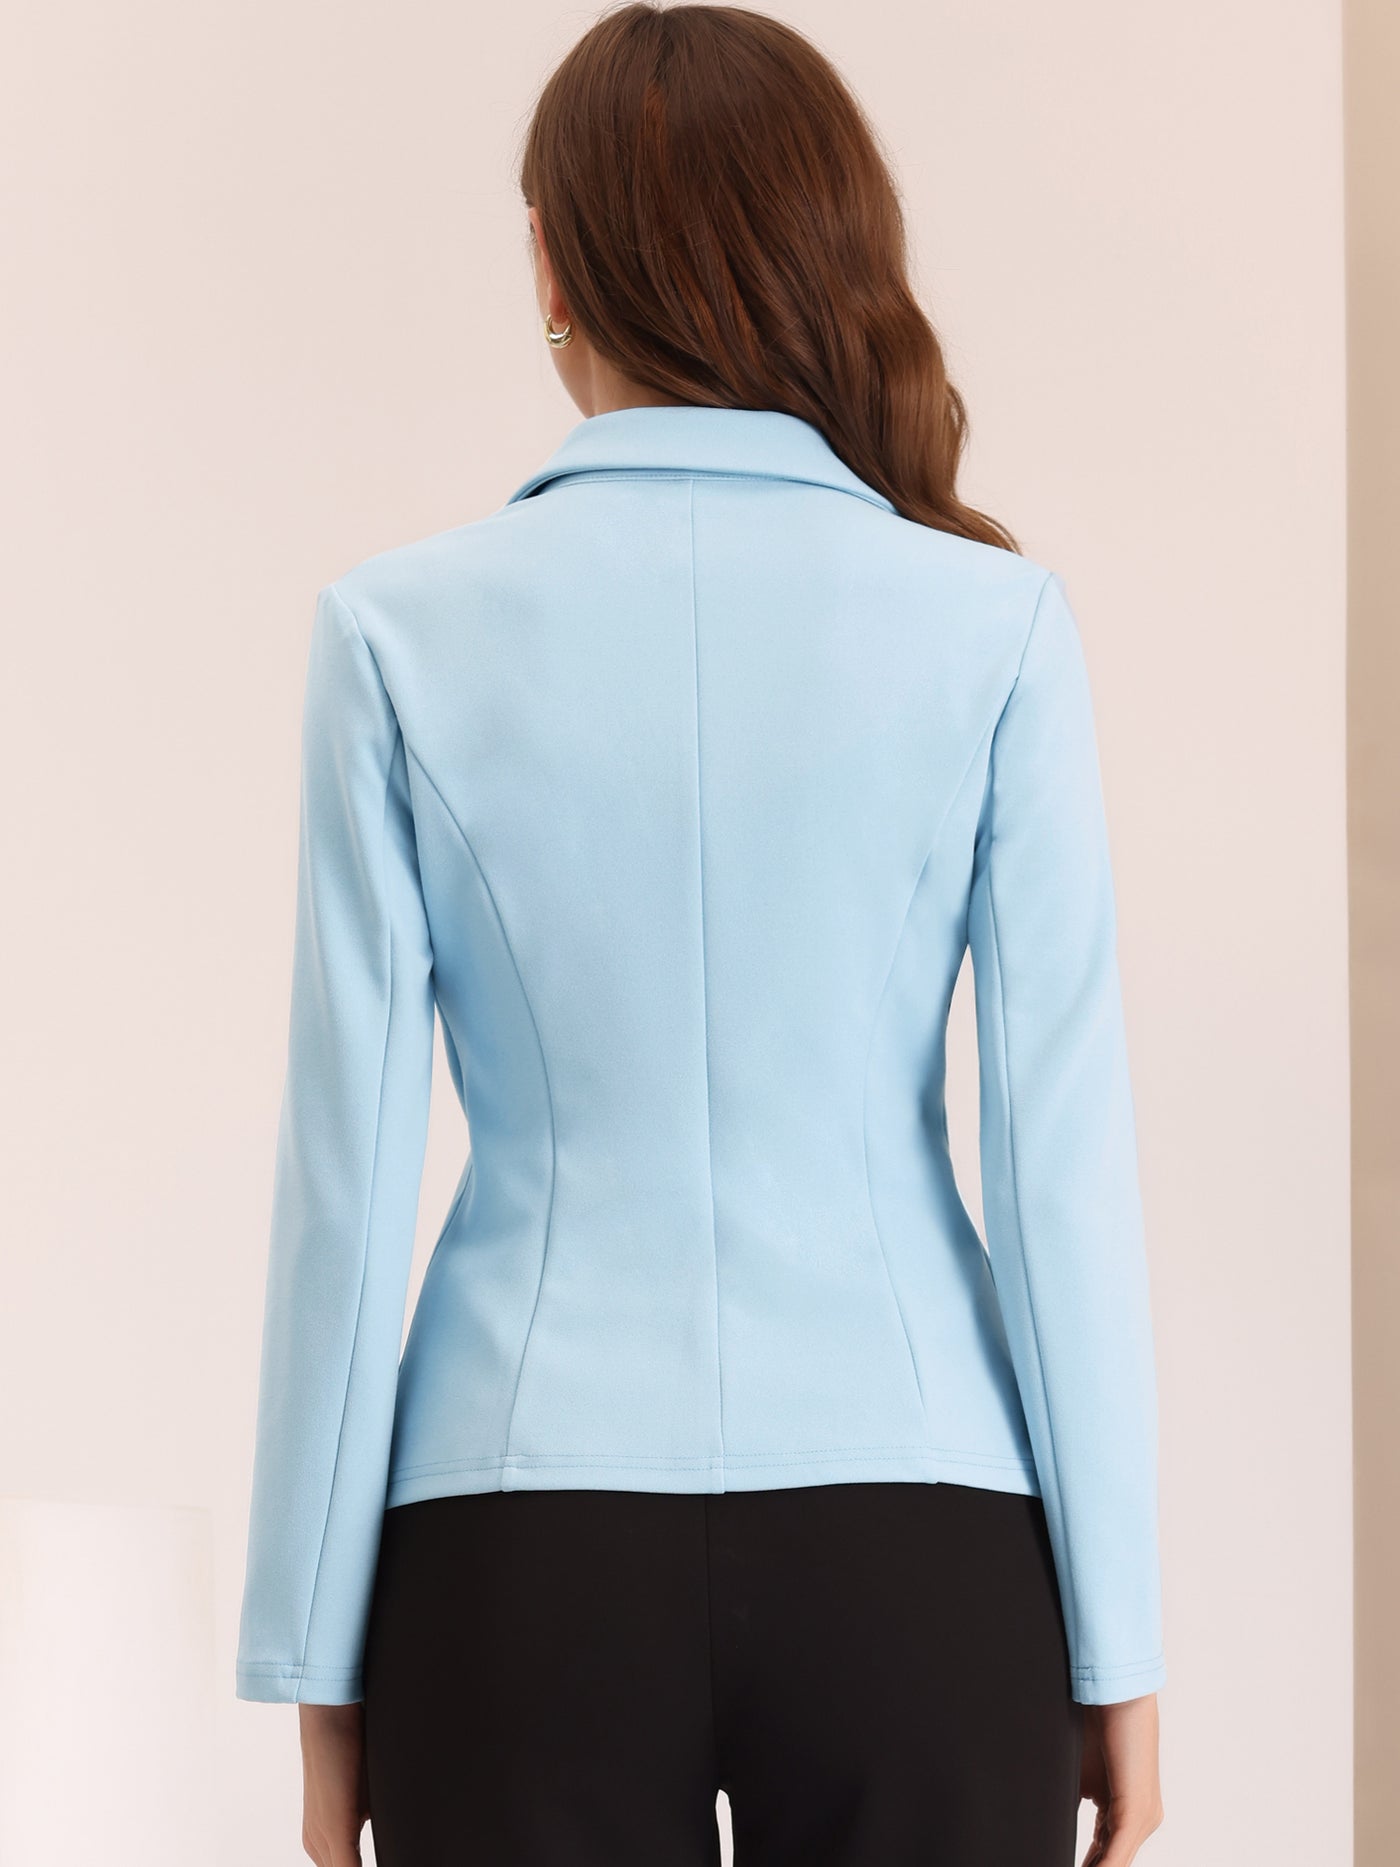 Allegra K Work Office Lapel Collar Stretch Jacket Suit Blazer